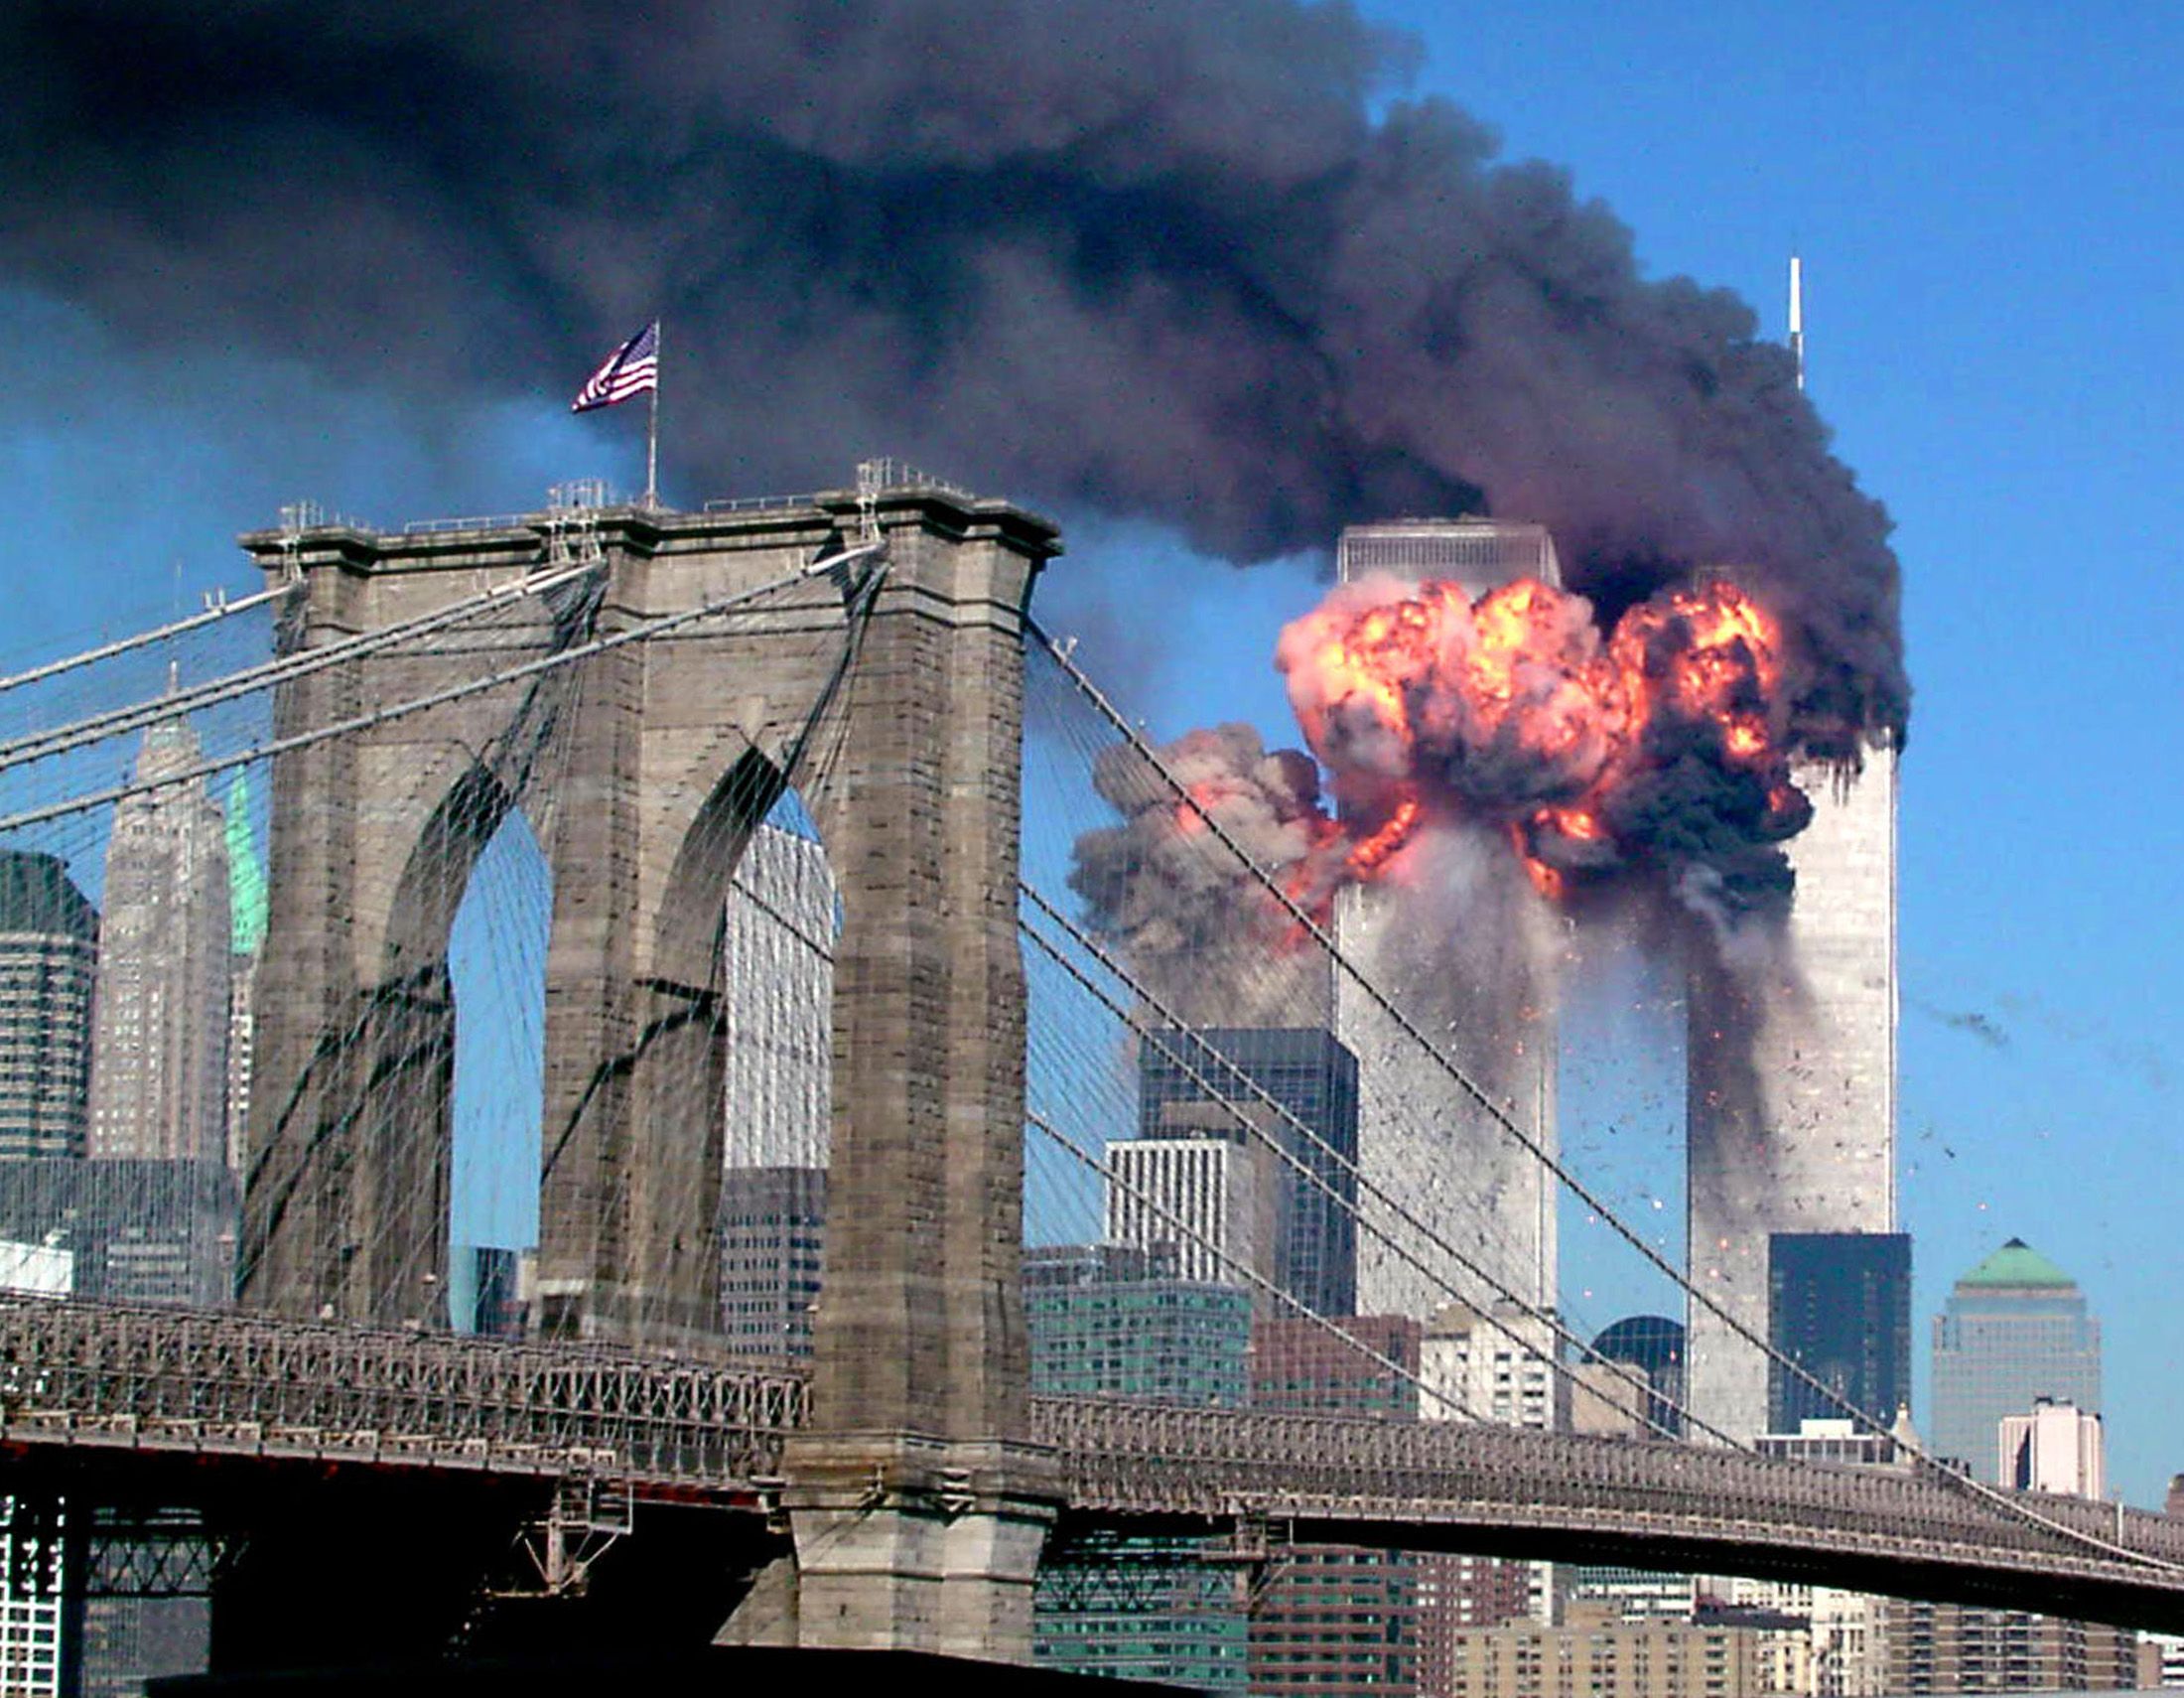 Нападение башен. Теракт 11 сентября 2001 года башни Близнецы. США 11.09.2001 Нью-Йорк, башни-Близнецы.